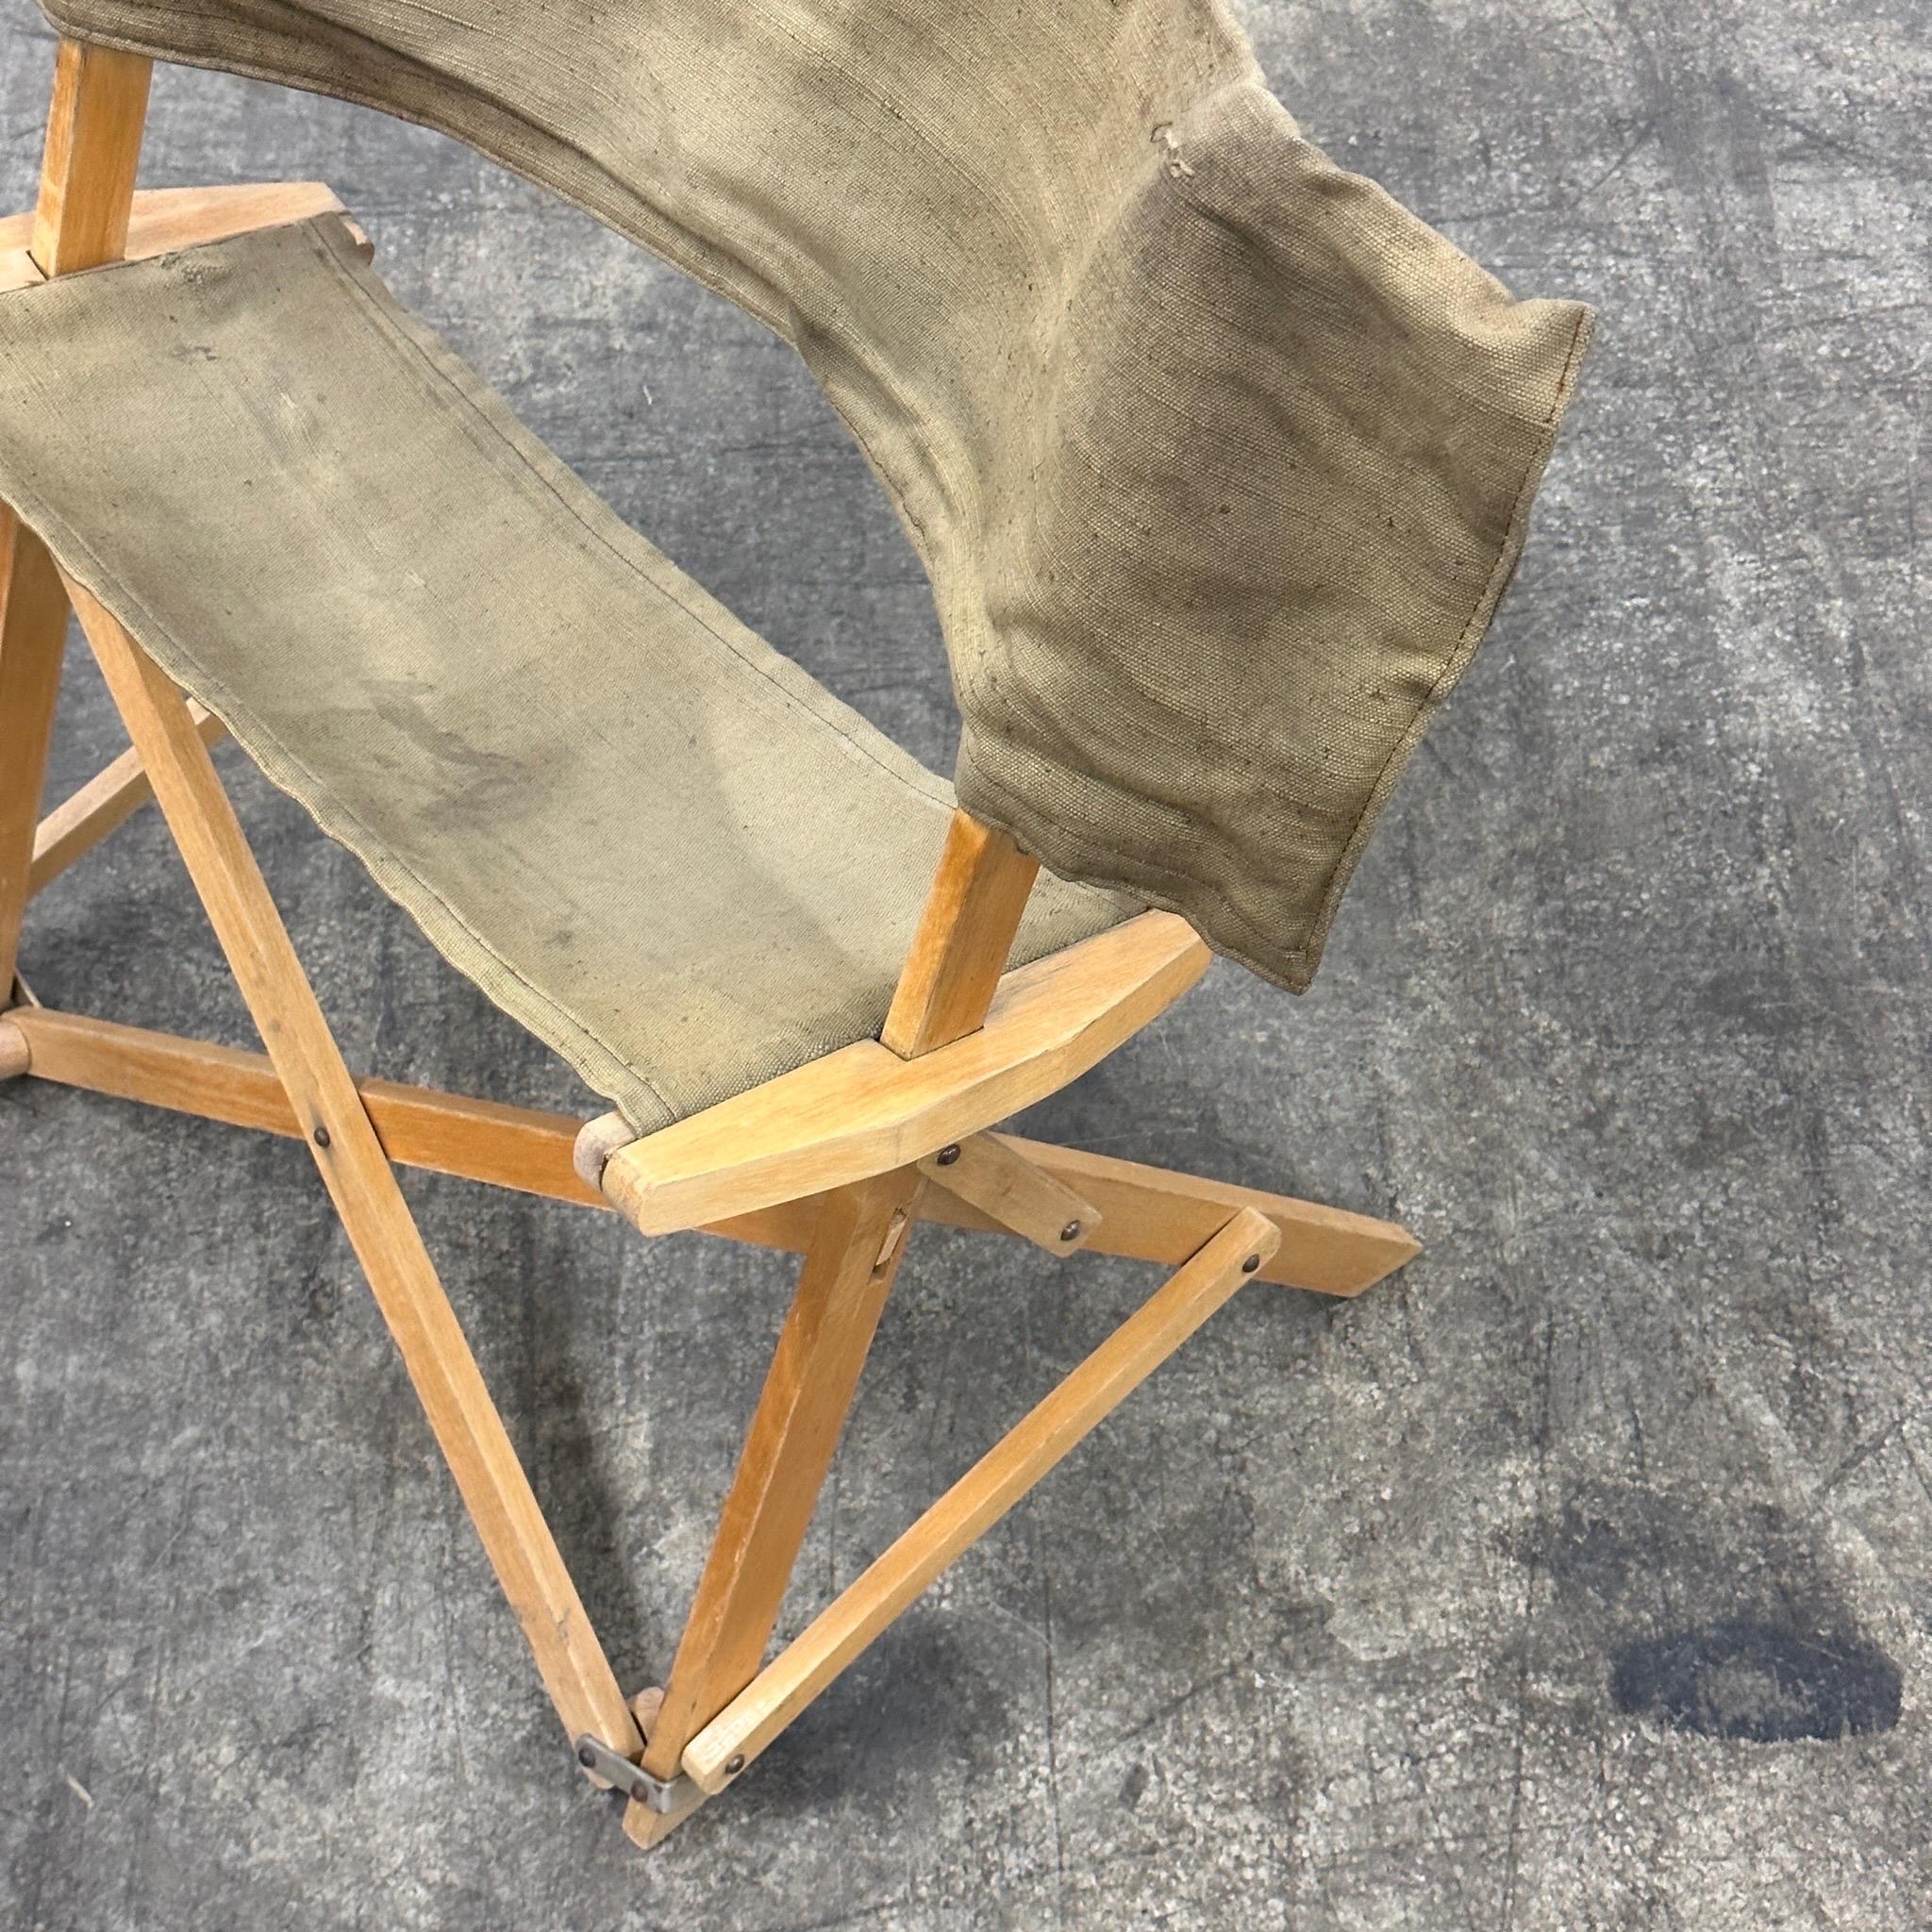 c. 1960s. Chaise pliante avec structure en bois et harnais en toile. Le dossier de la chaise est un sac de transport dans lequel la chaise entière se range. Il s'agit apparemment d'un article promotionnel pour les caméras Petri. 